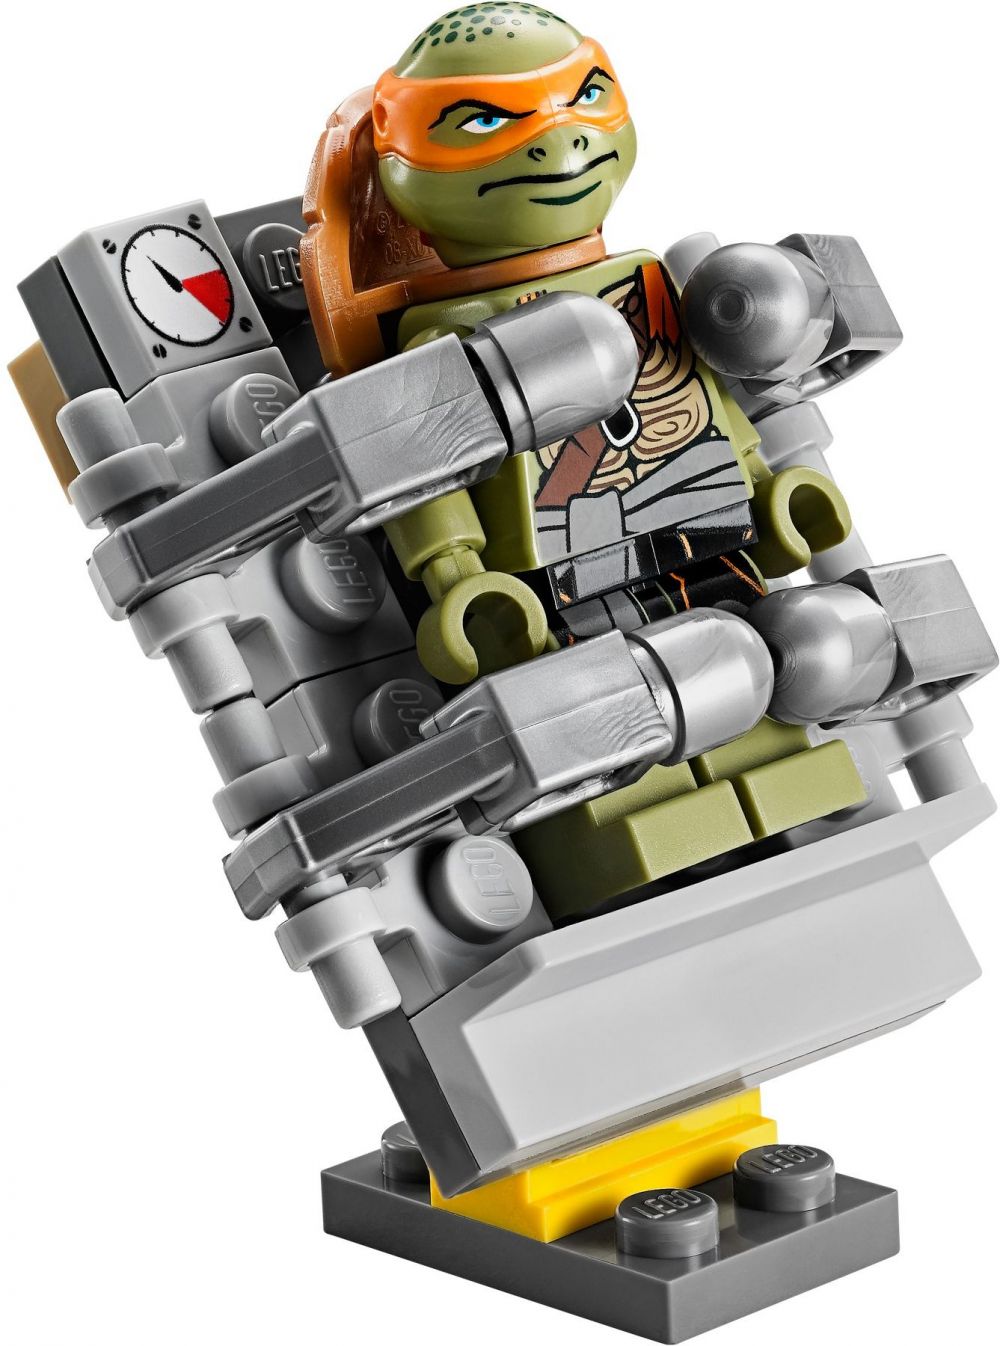 LEGO Tortues Ninja 79115 pas cher, L'attaque du Van des Tortues